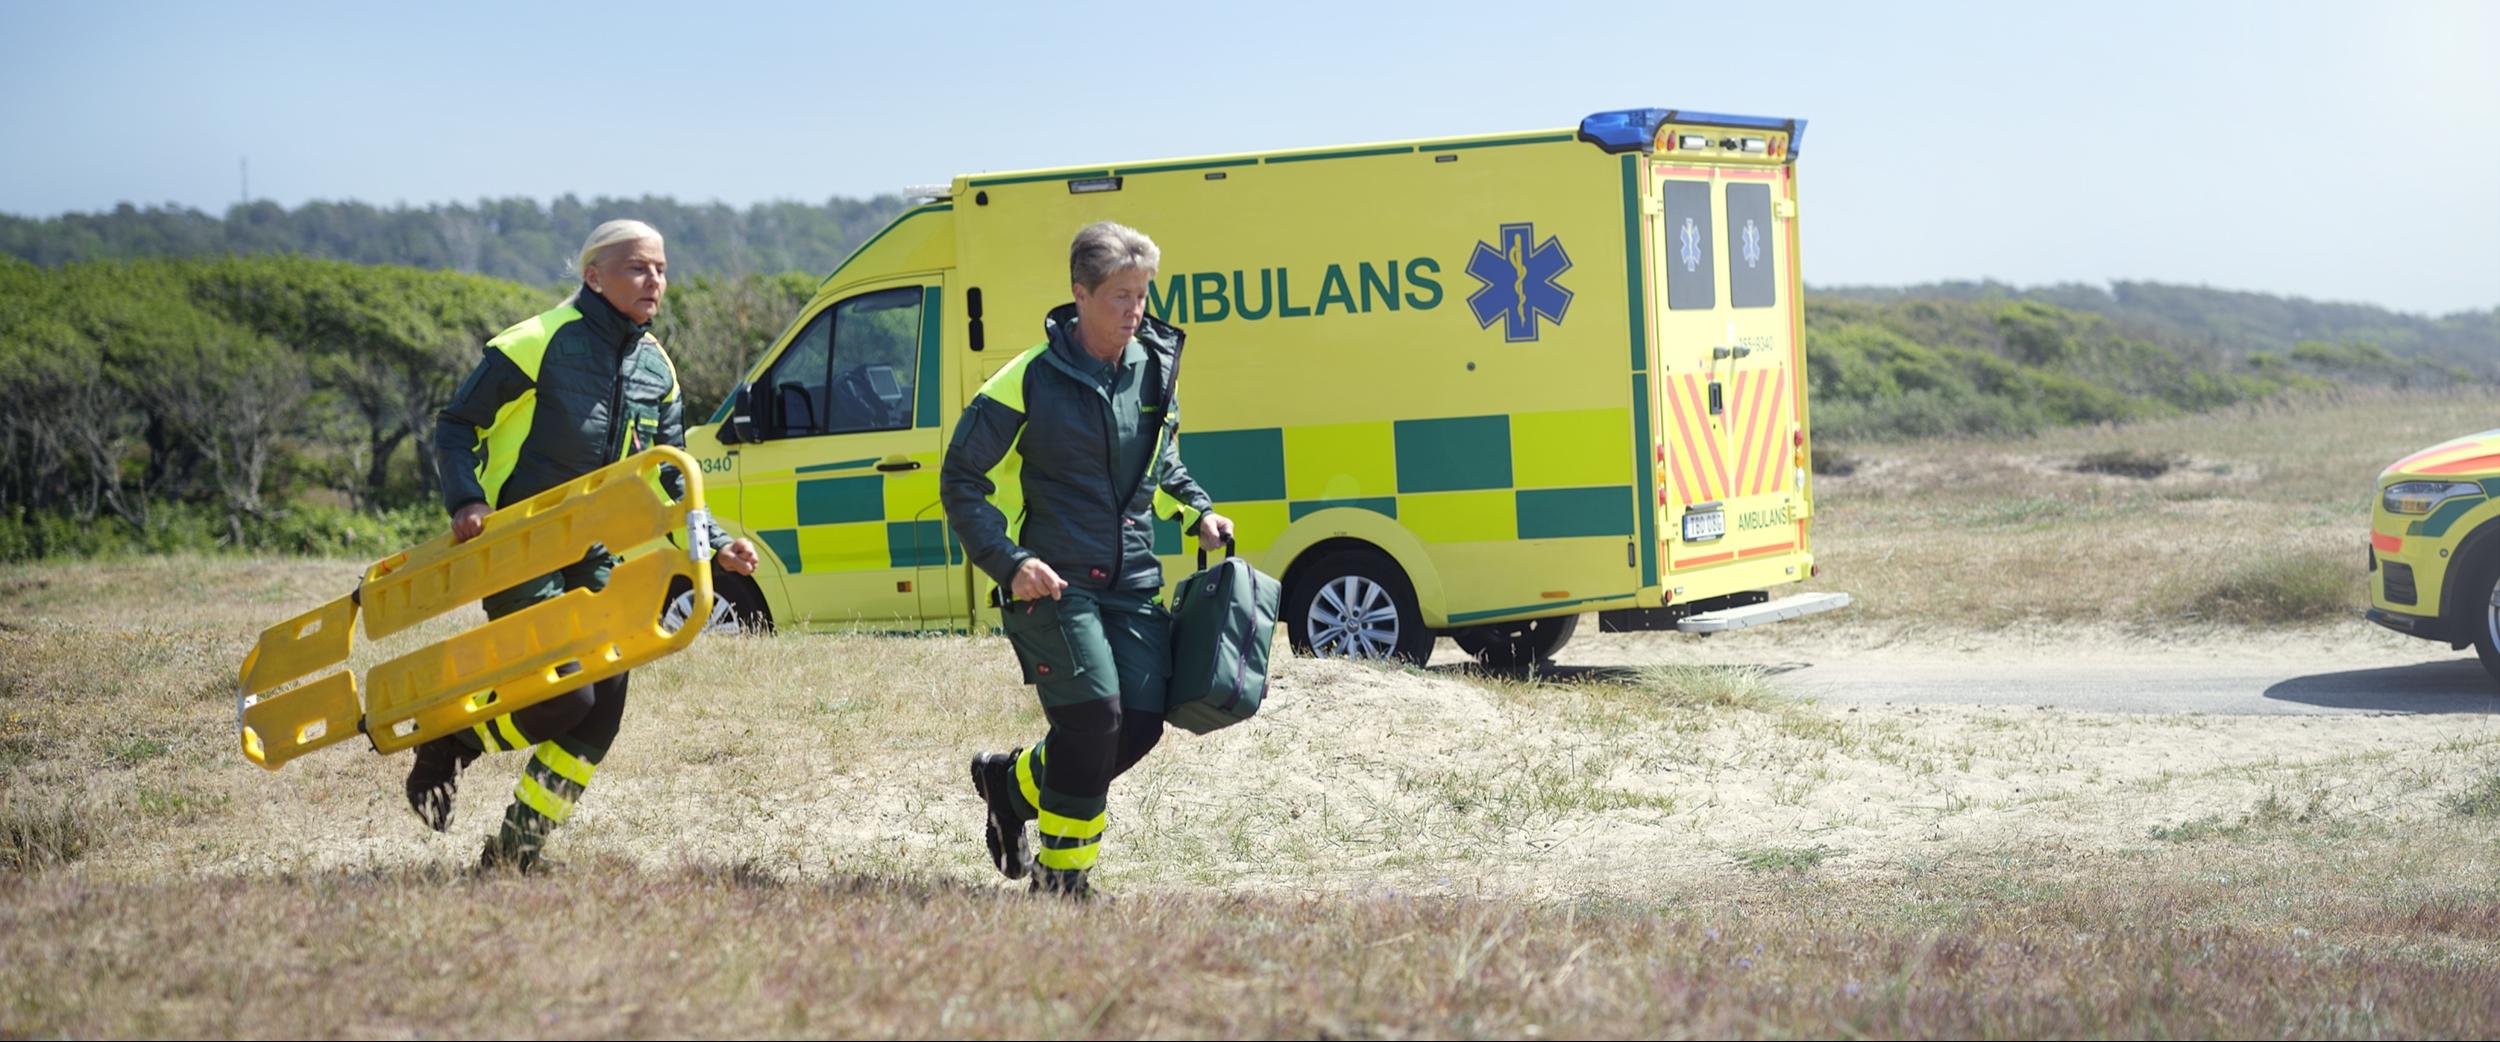 Springande ambulanspersonal i arbetskläder